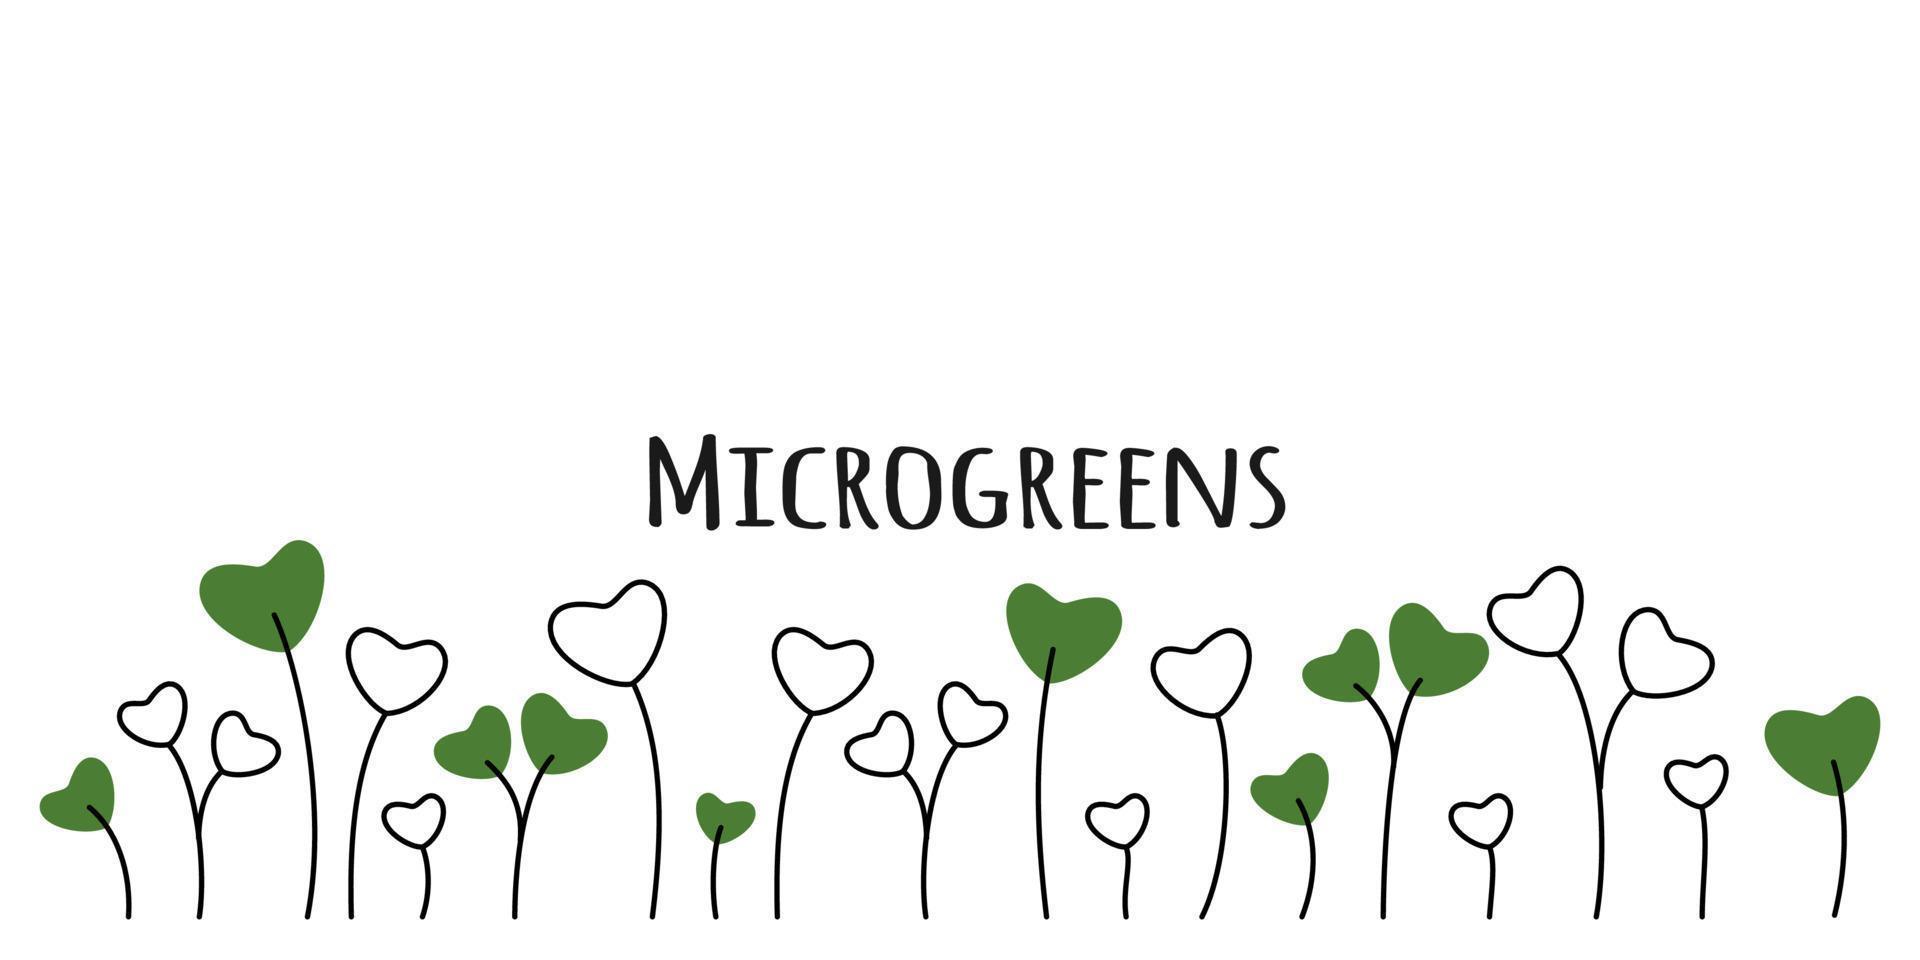 färgad microgreen blandad frön ärtor lök rädisa beta och andra på vit bakgrund vektor illustration